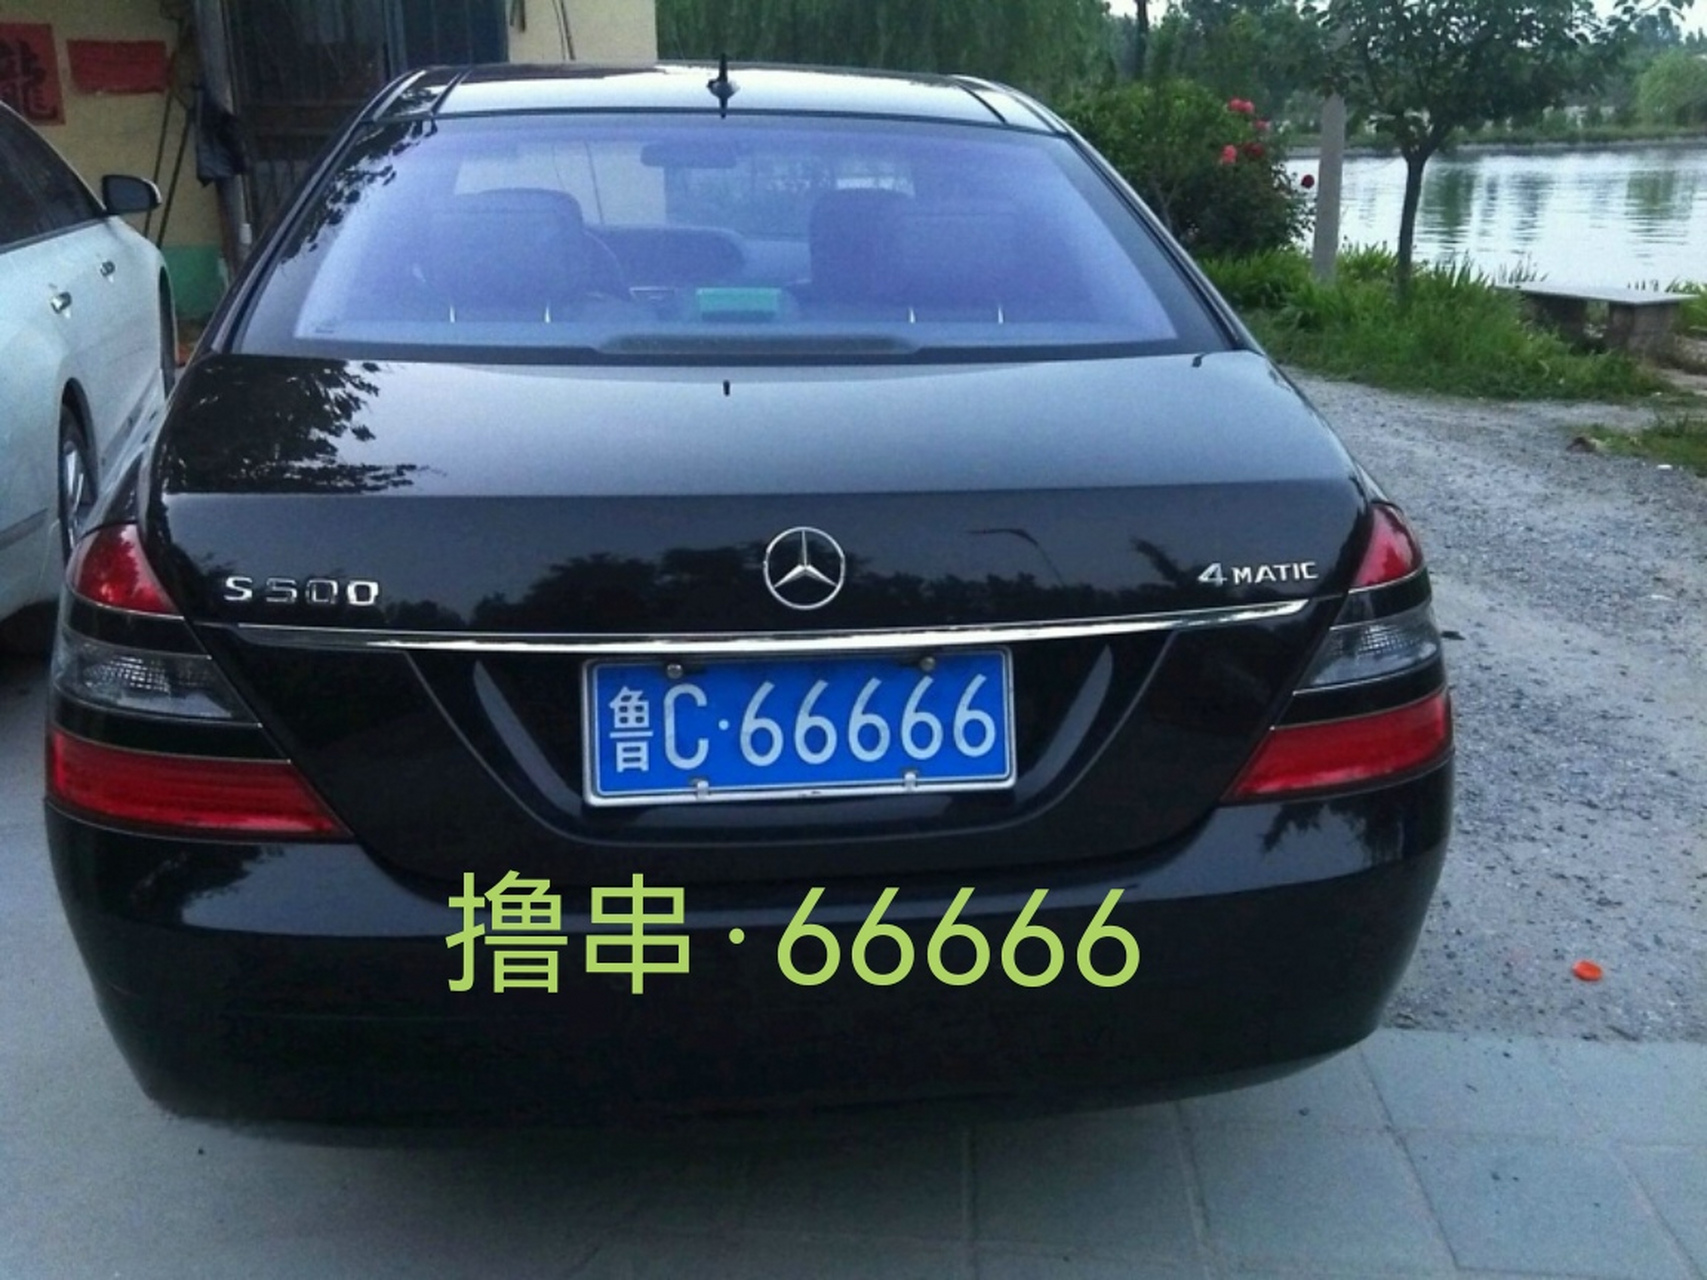 淄博烧烤火出了圈,究其原因,有网友说是因为淄博的车牌号是鲁c开头